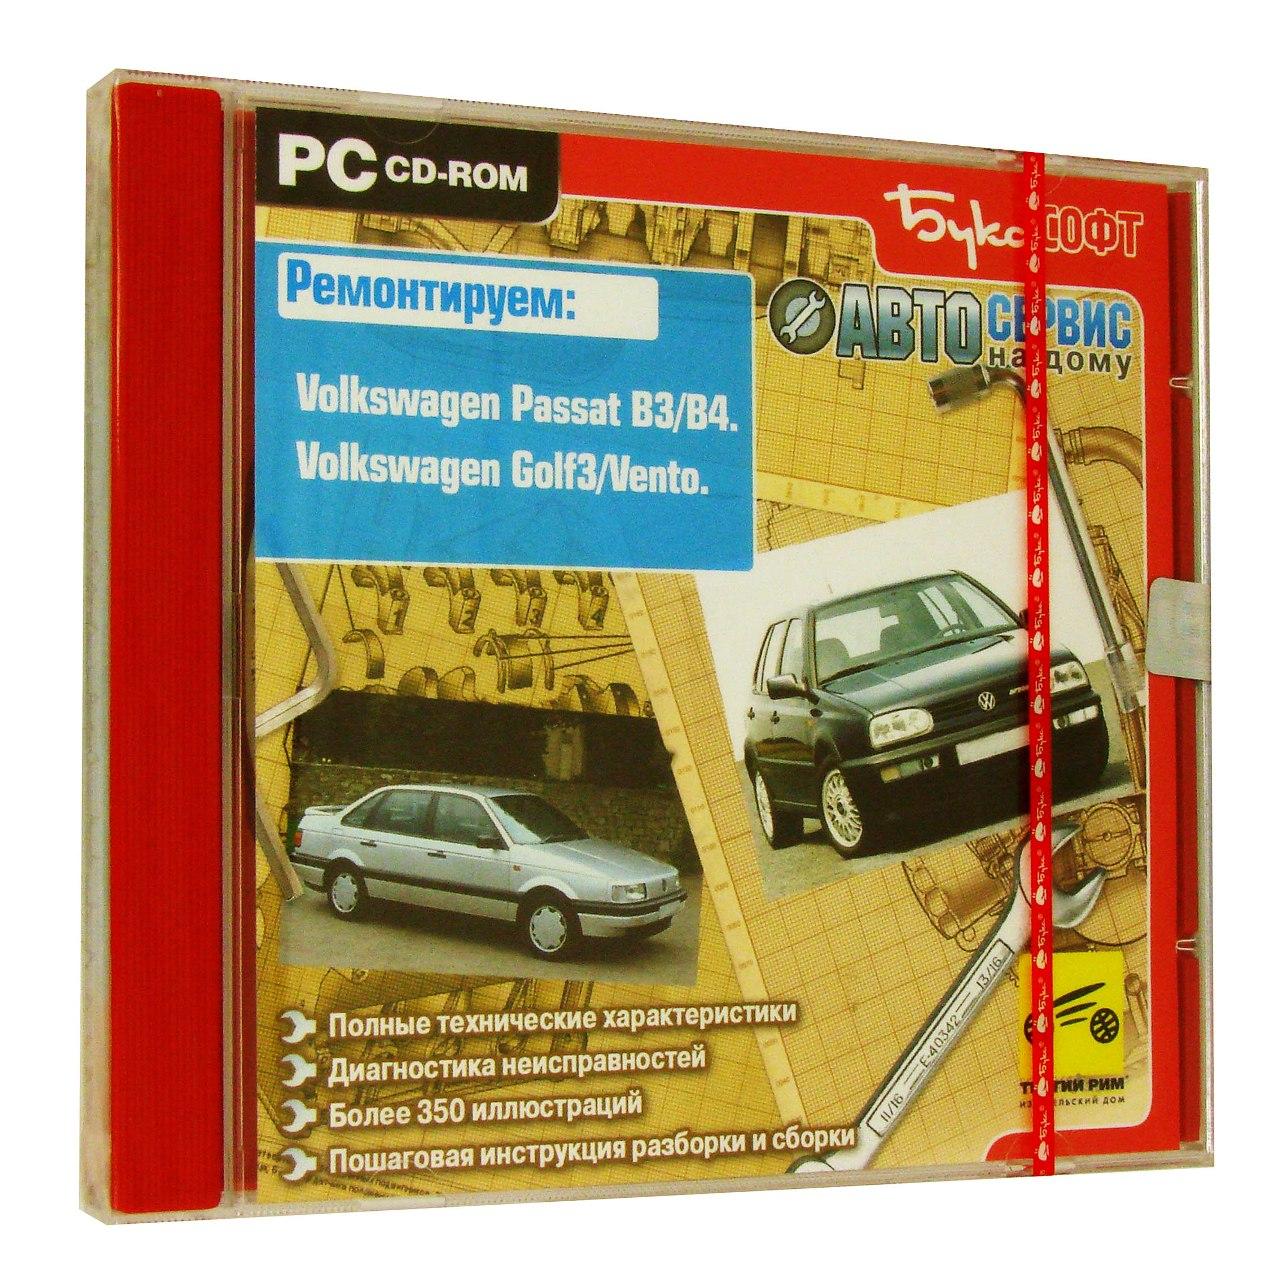 Компьютерный компакт-диск Volksvagen Passat B3/B4. Volksvagen Golf 3/Vento. ’Автосервис на дому’. (ПК), фирма "Бука", 1CD